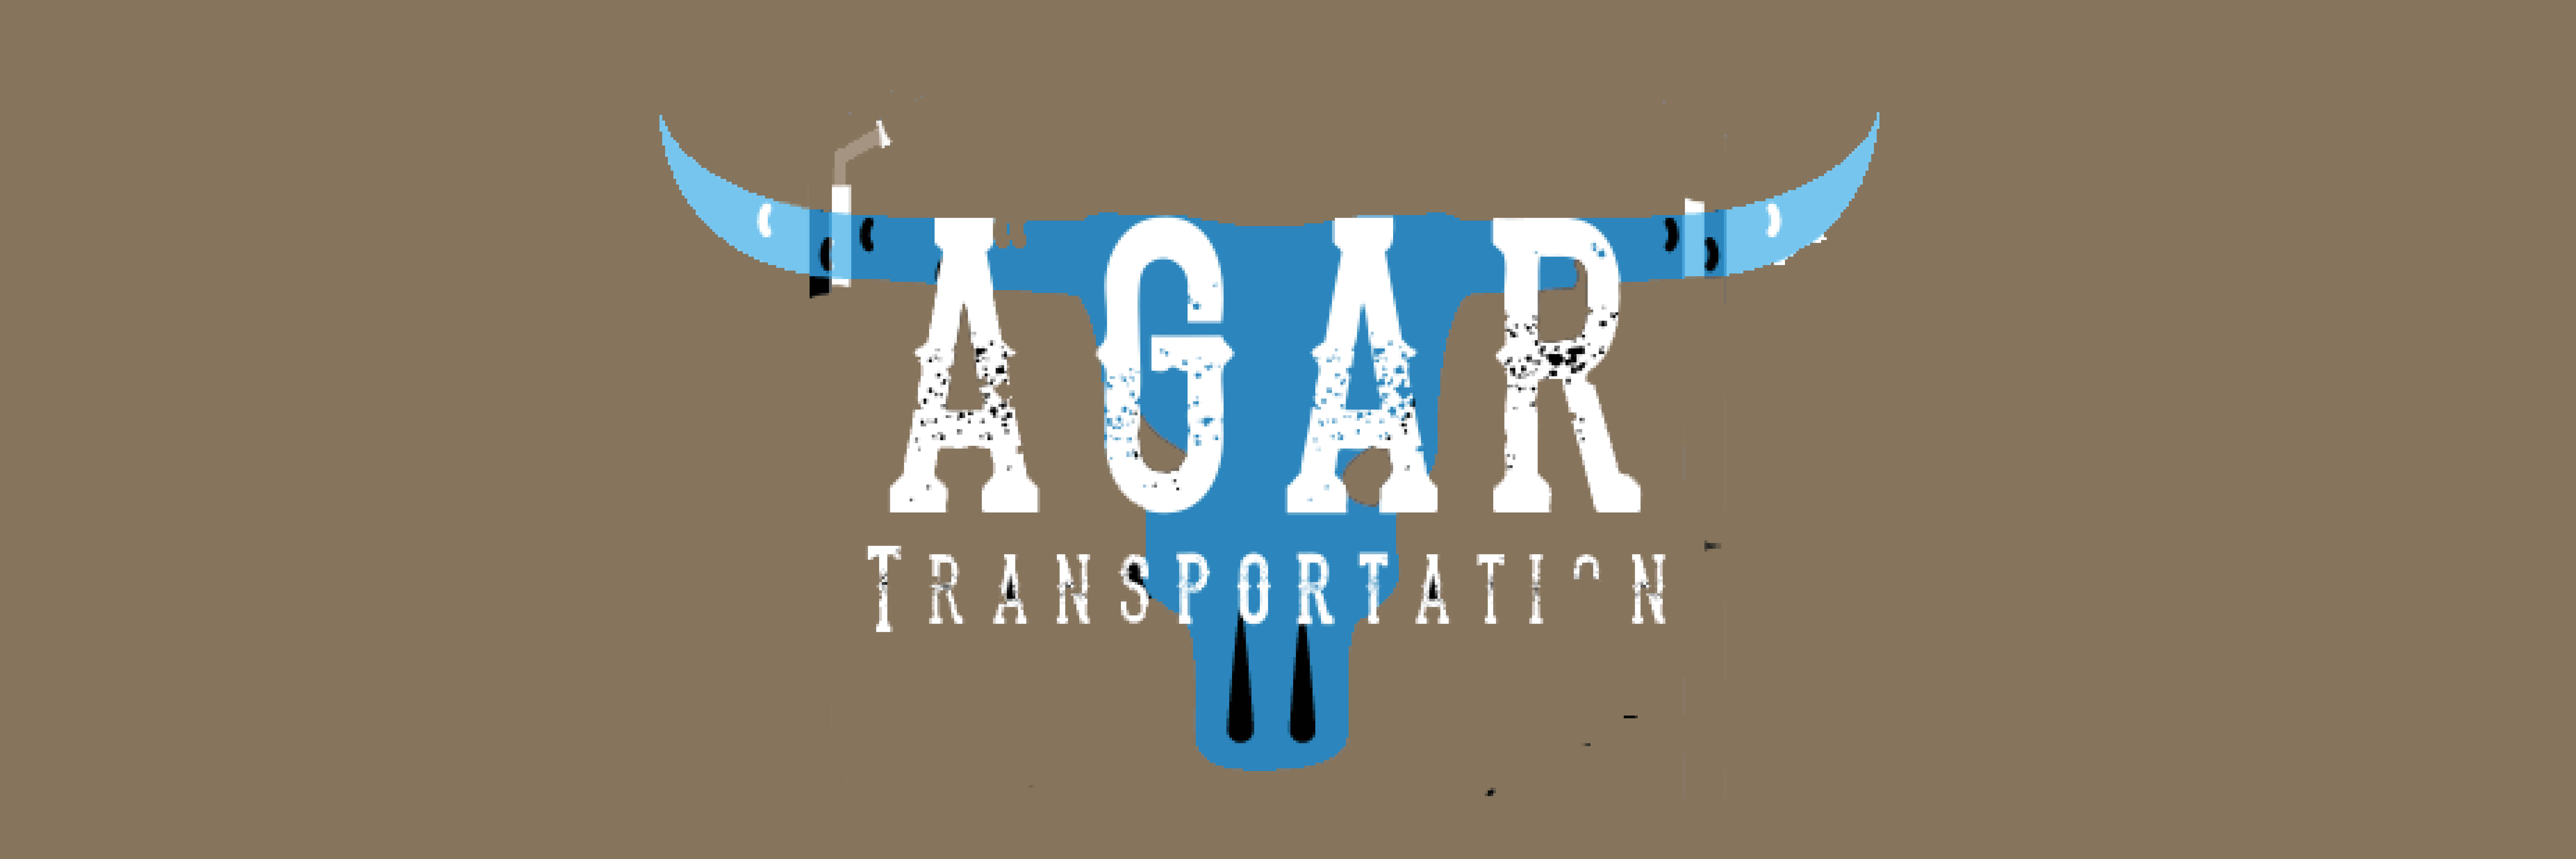 Agar Transportation